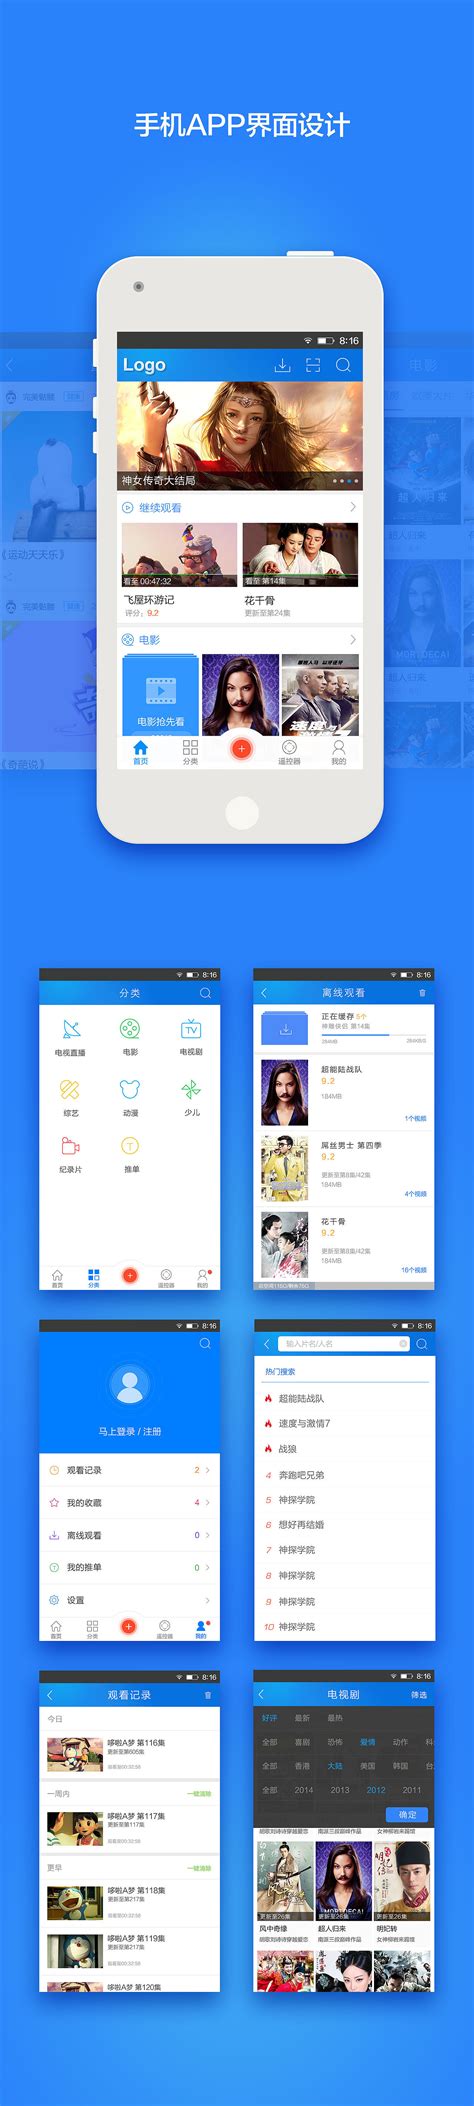 手机北京网站设计